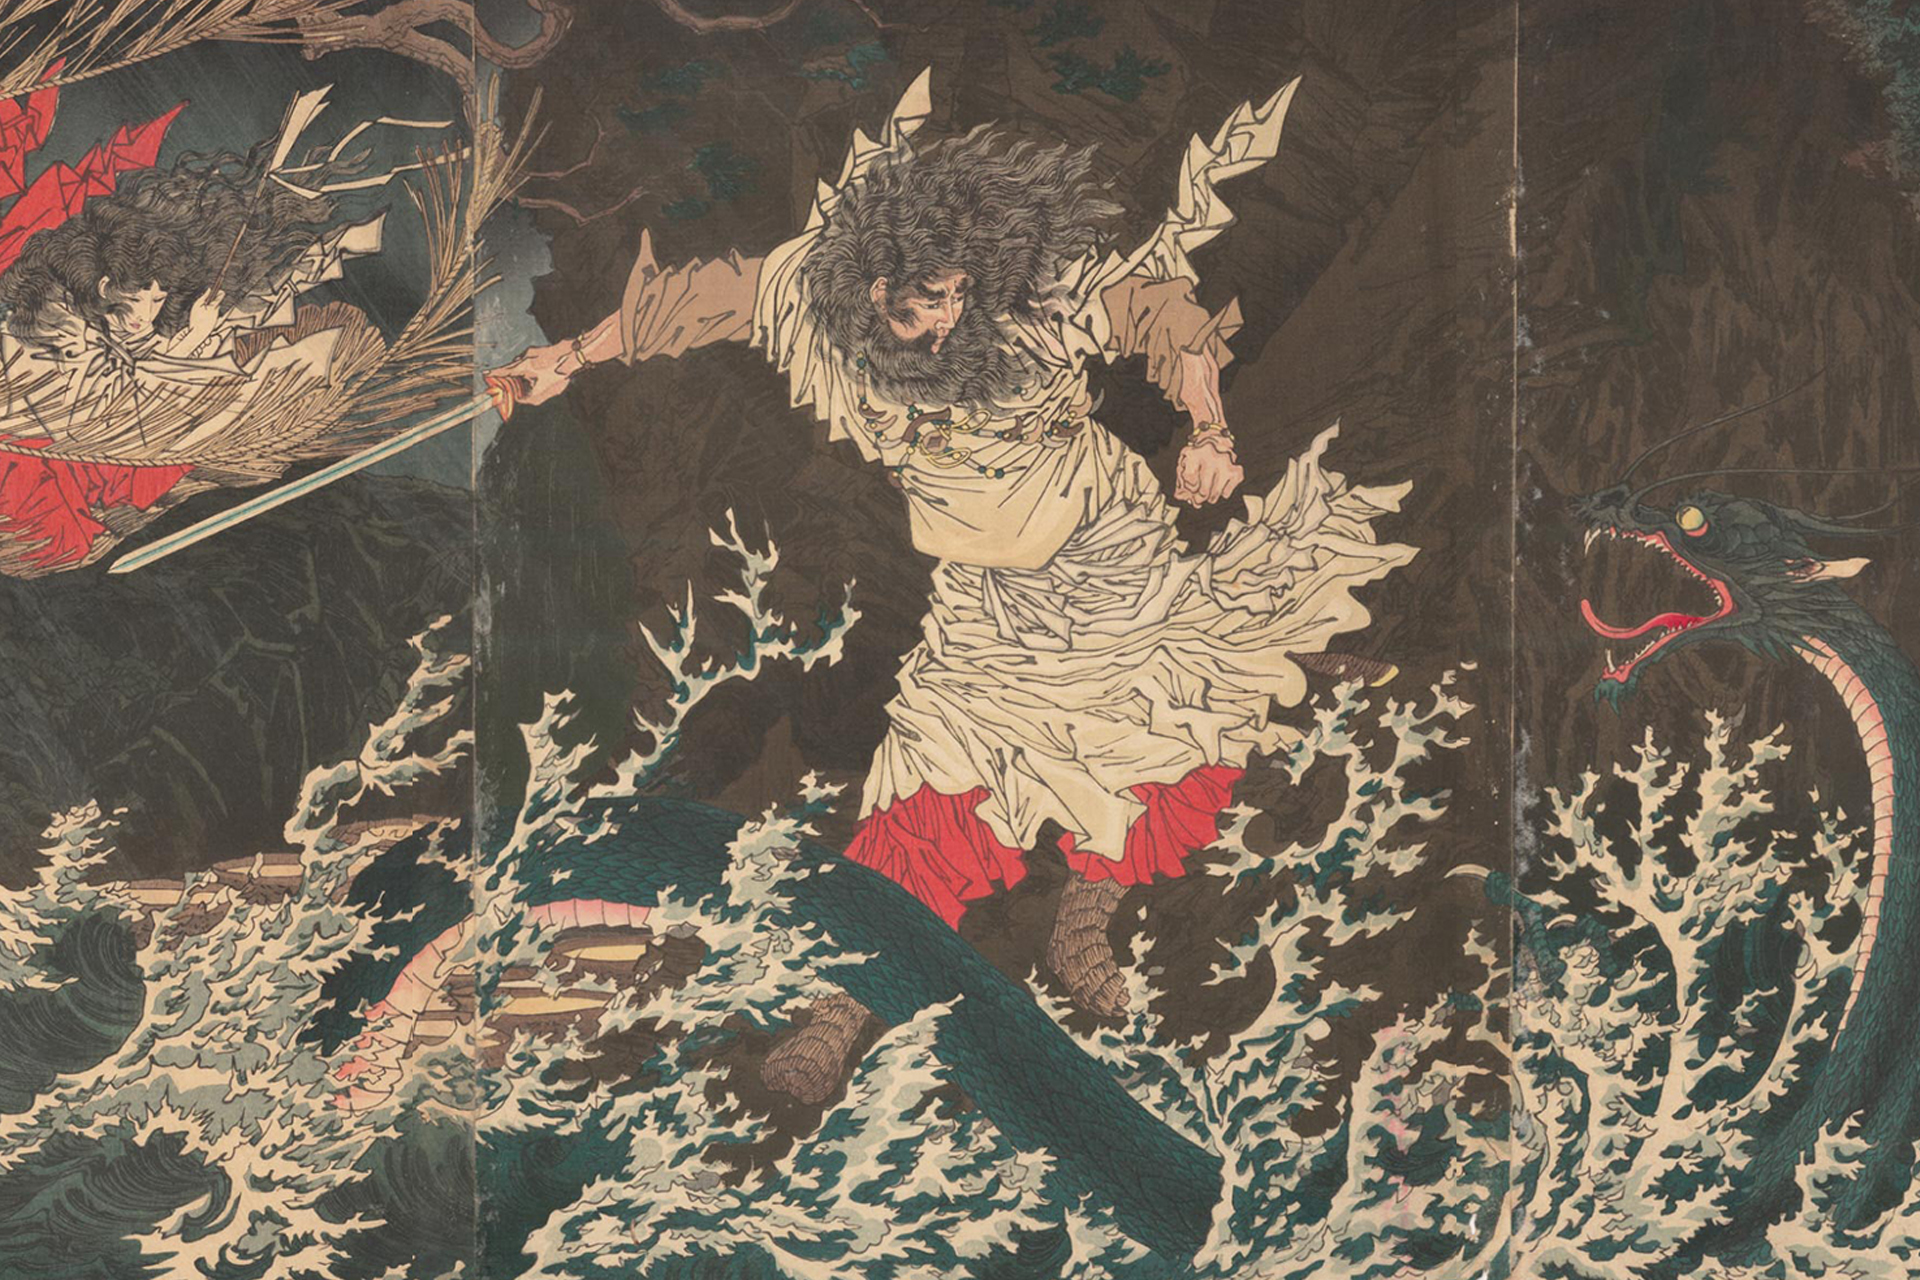 japanese mythical gods